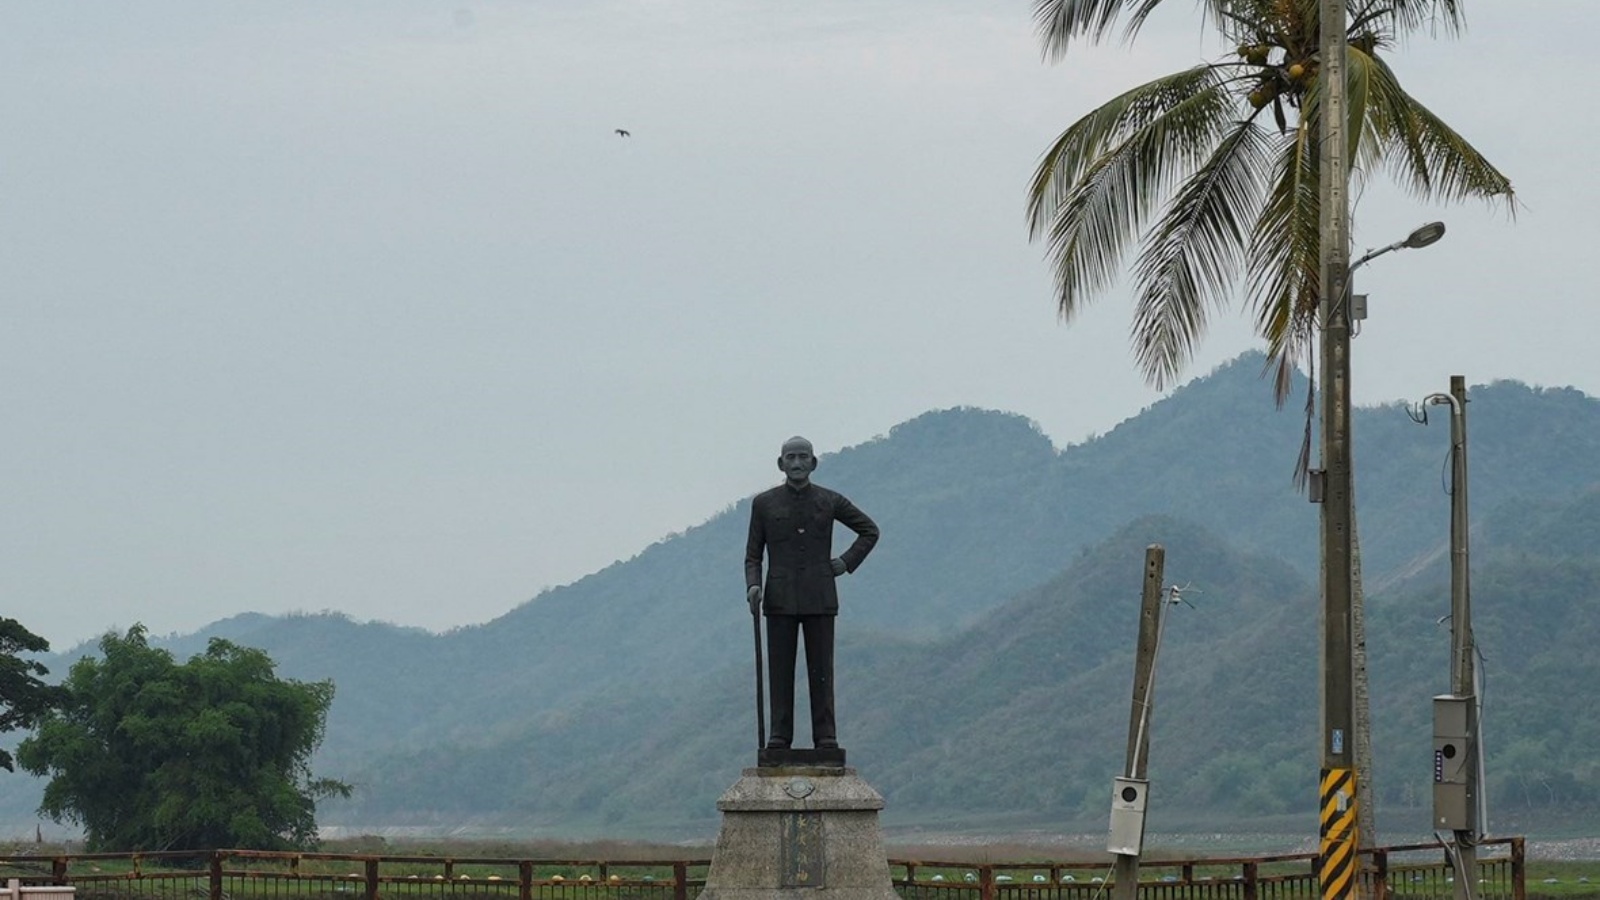 تمثال للرئيس التايواني الراحل شيانغ كاي شيك على ضفة خزان تسنغوين في مقاطعة تشيايي 13 مايو 2023